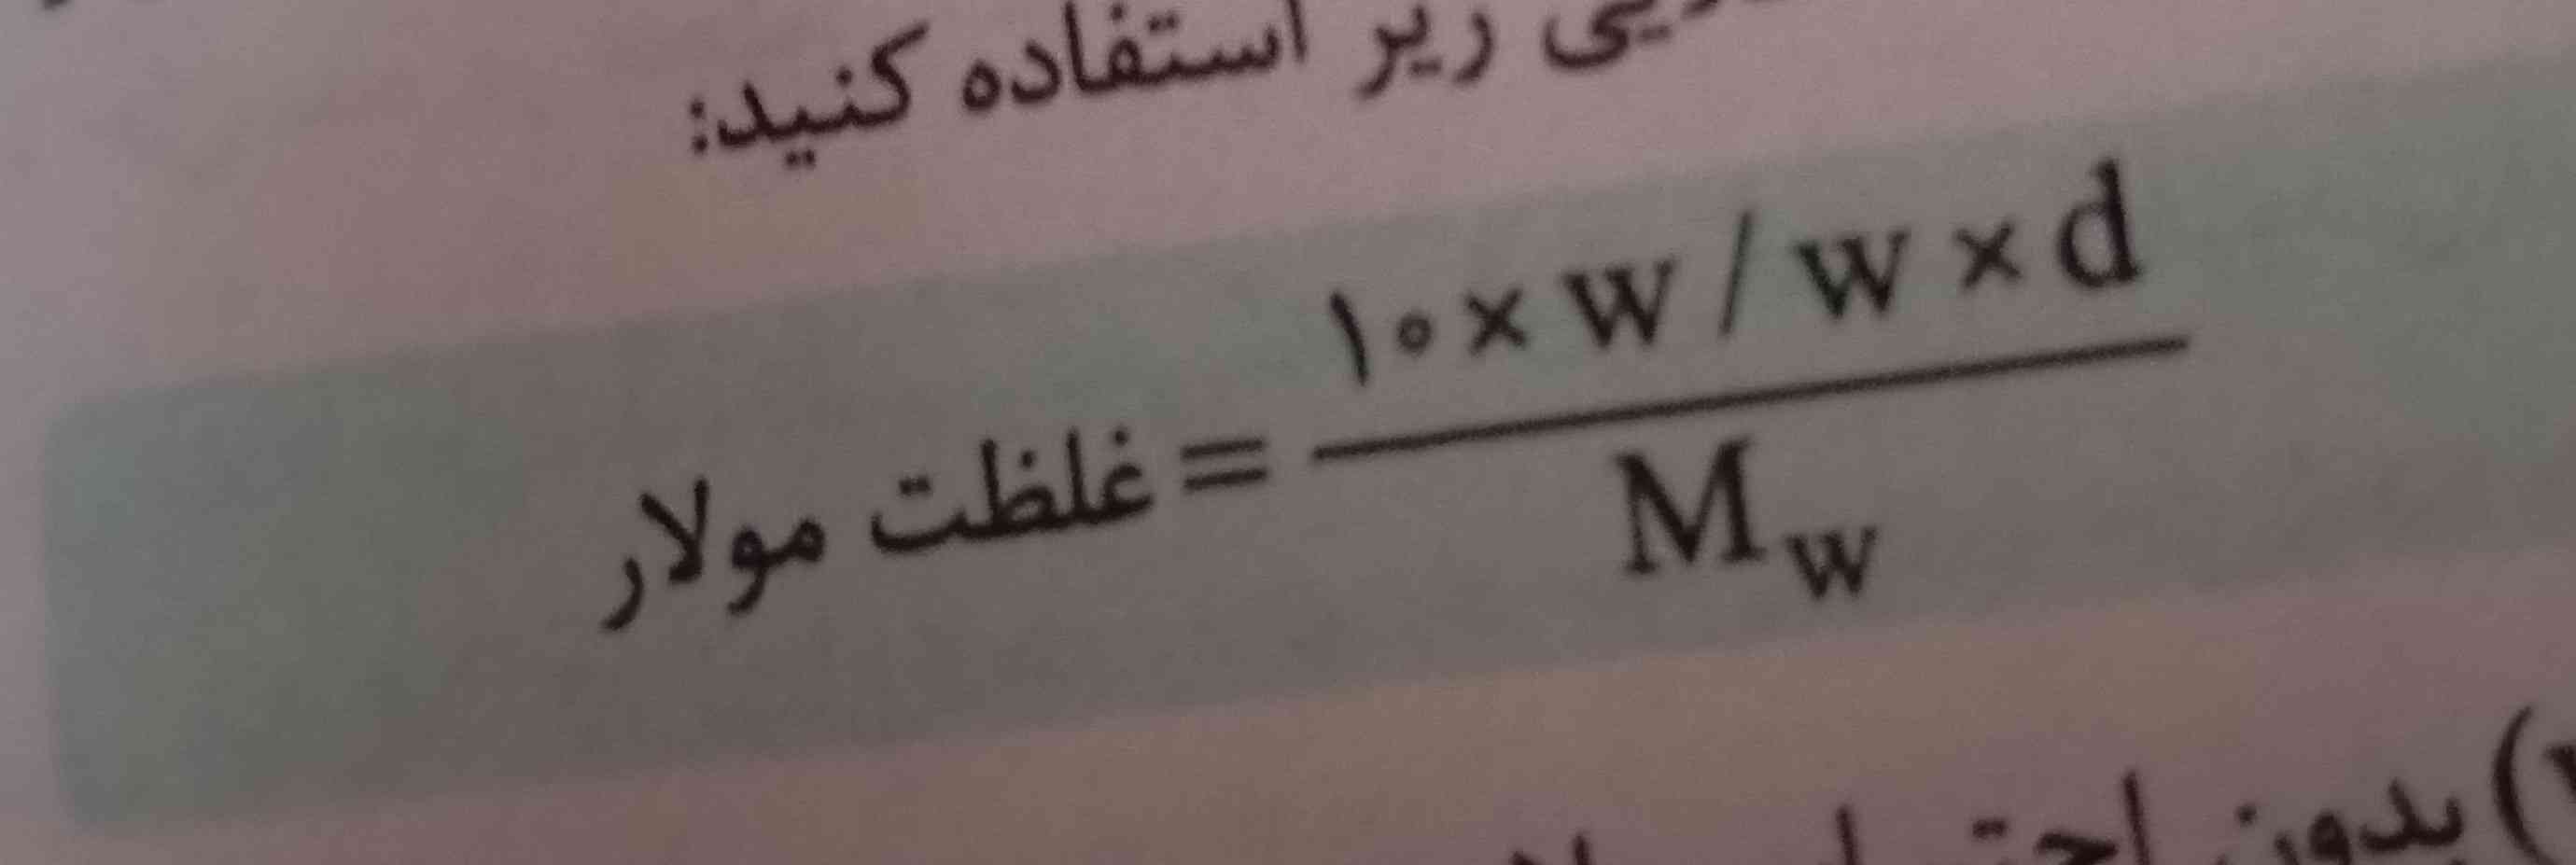 این فرمول برا امتحانا نهایی اشکال نداره استفاده کنیم؟؟؟